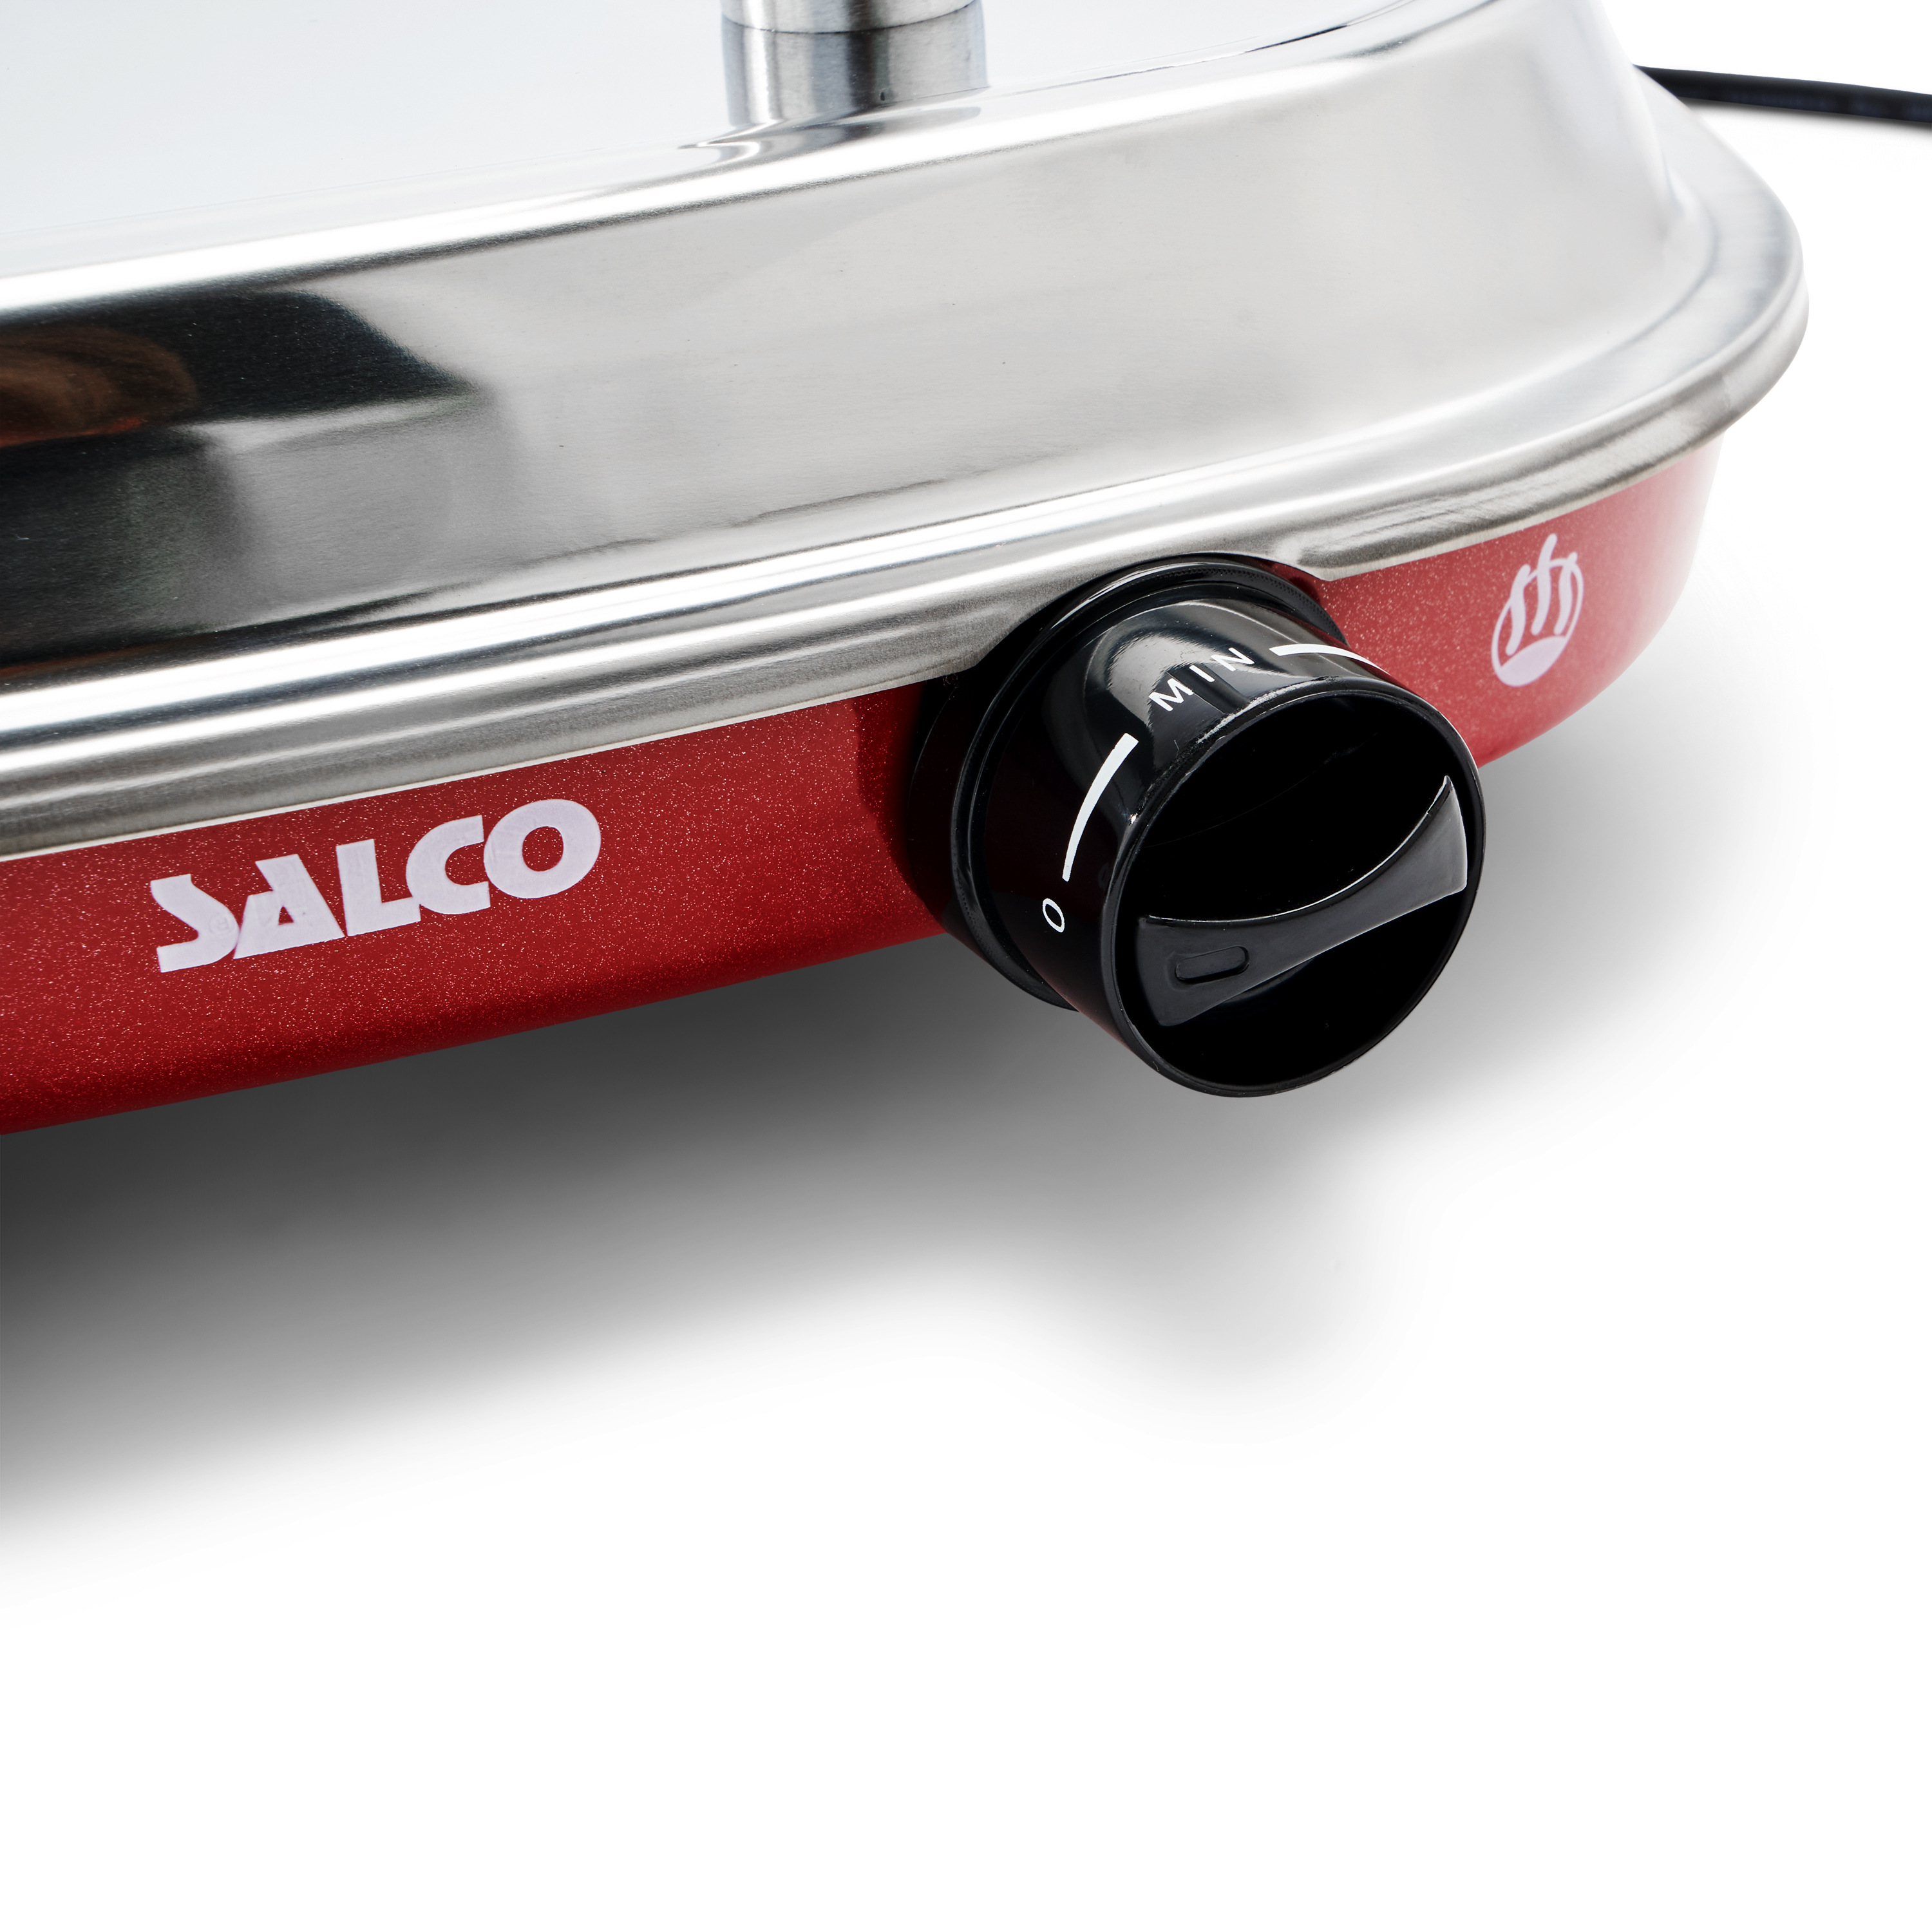 SALCO Salco HotDog Maker Retro-Style für und Würstchen Thermo-Control rot) Dampfgarer 450W Brötchen Food Fast HotDog-Maker